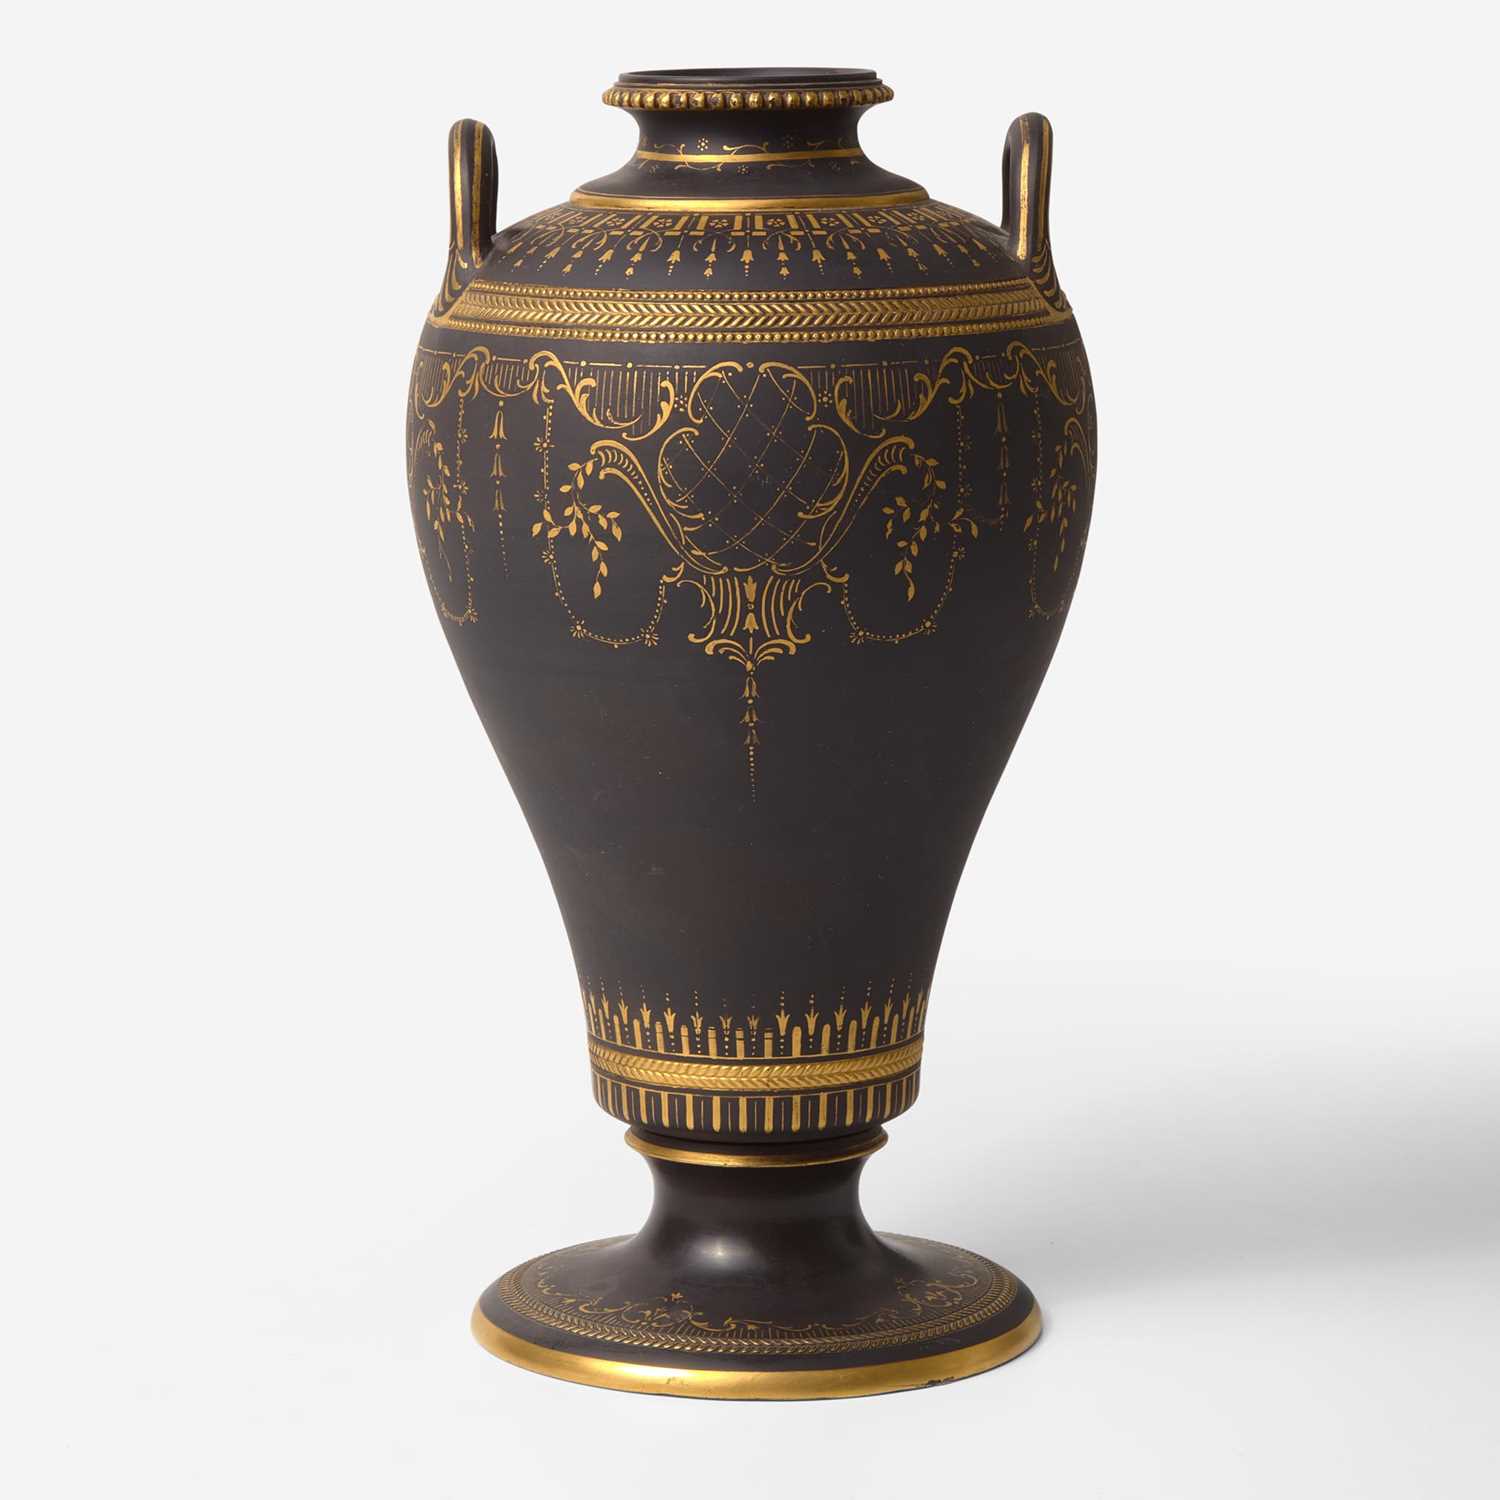 Lot 59 - A Wedgwood Gilded Black Basalt Handled Vase